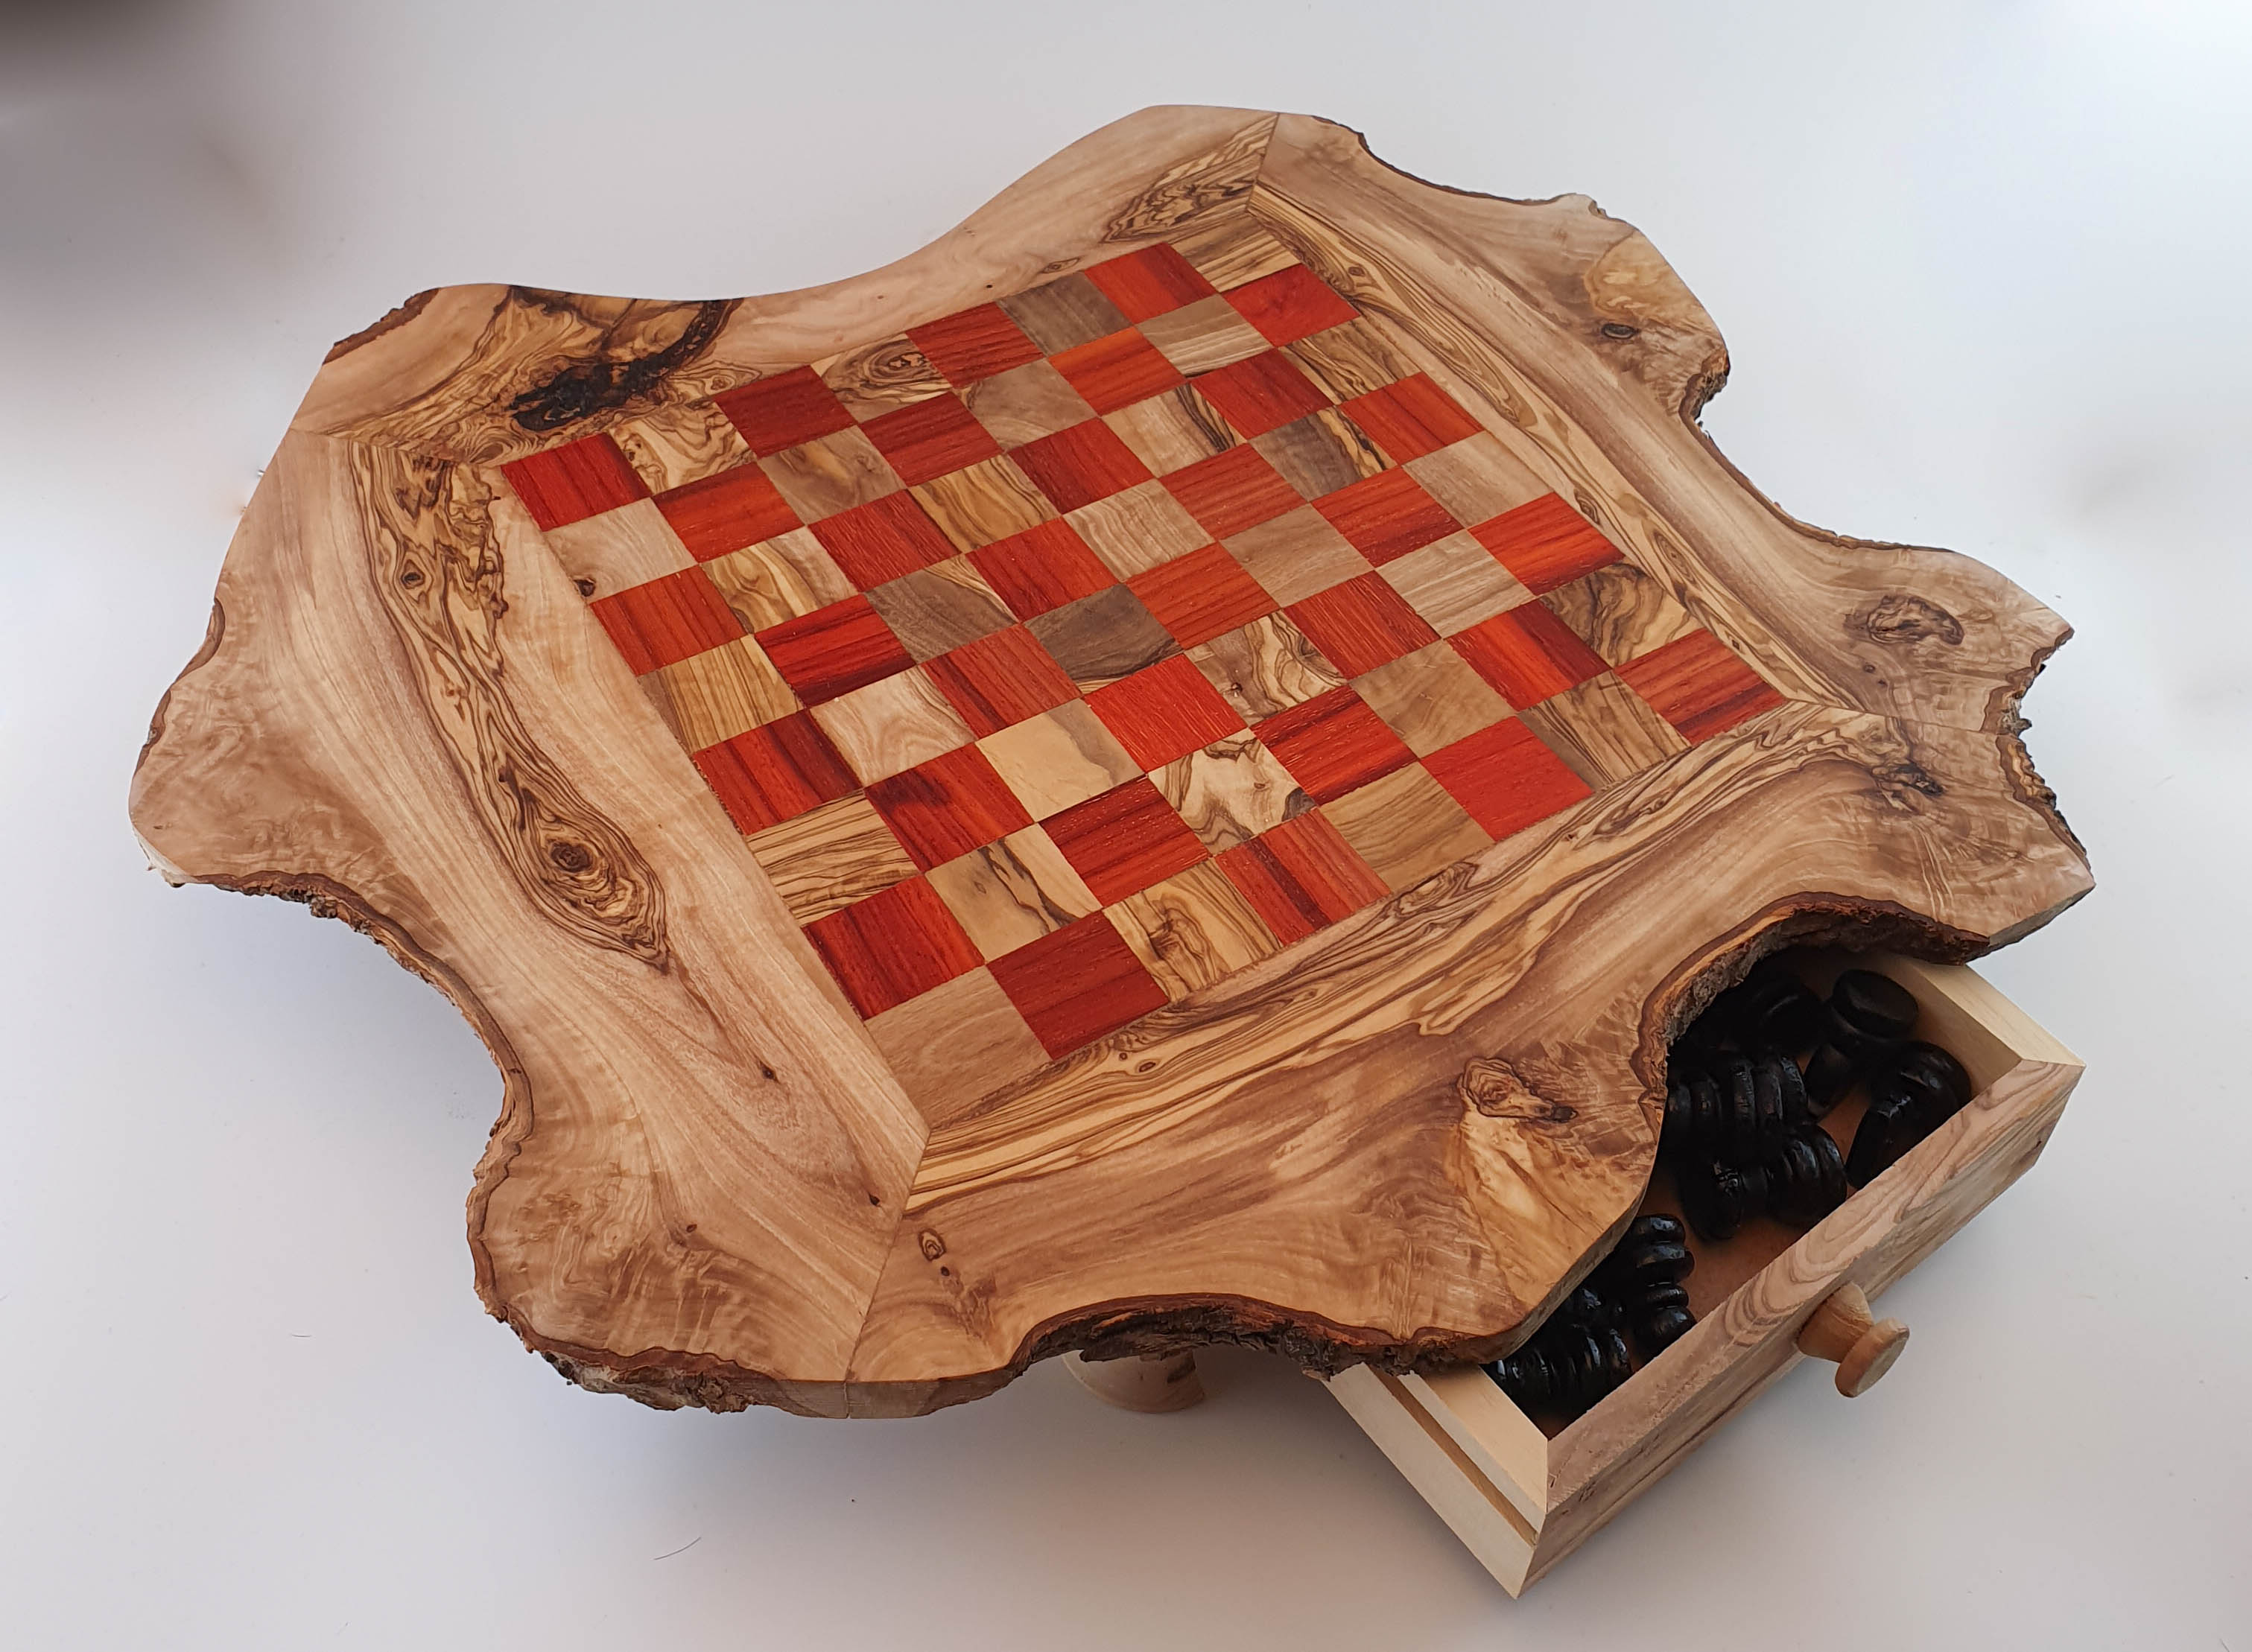 Juego de ajedrez rústico con cajones de madera de olivo de aproximadamente 42cm x 42cm.